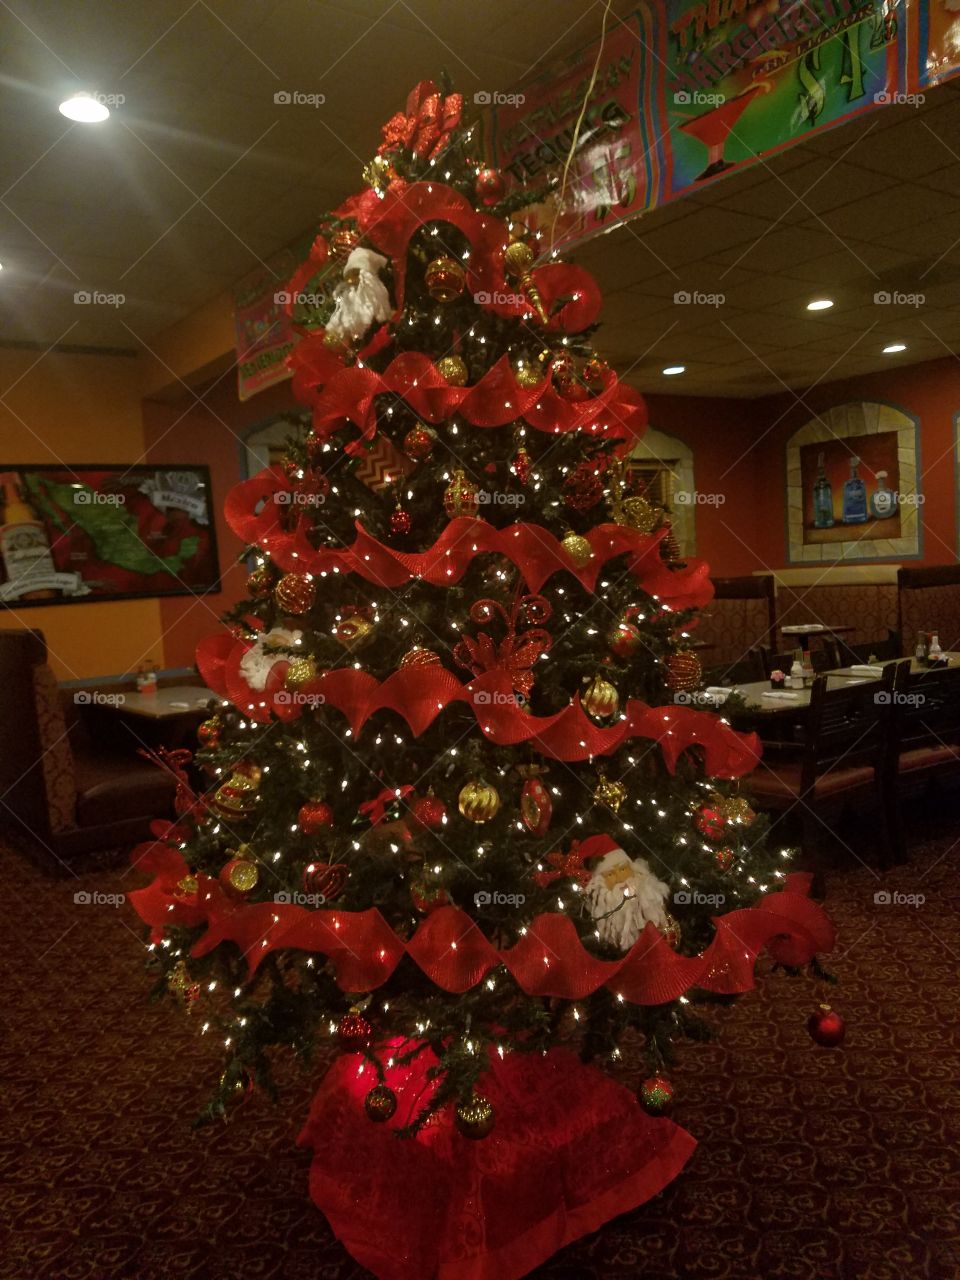 Llegó Navidad, como pueden ver este hermoso árbol de Navidad llena de luces  y bien cargado el árbol.